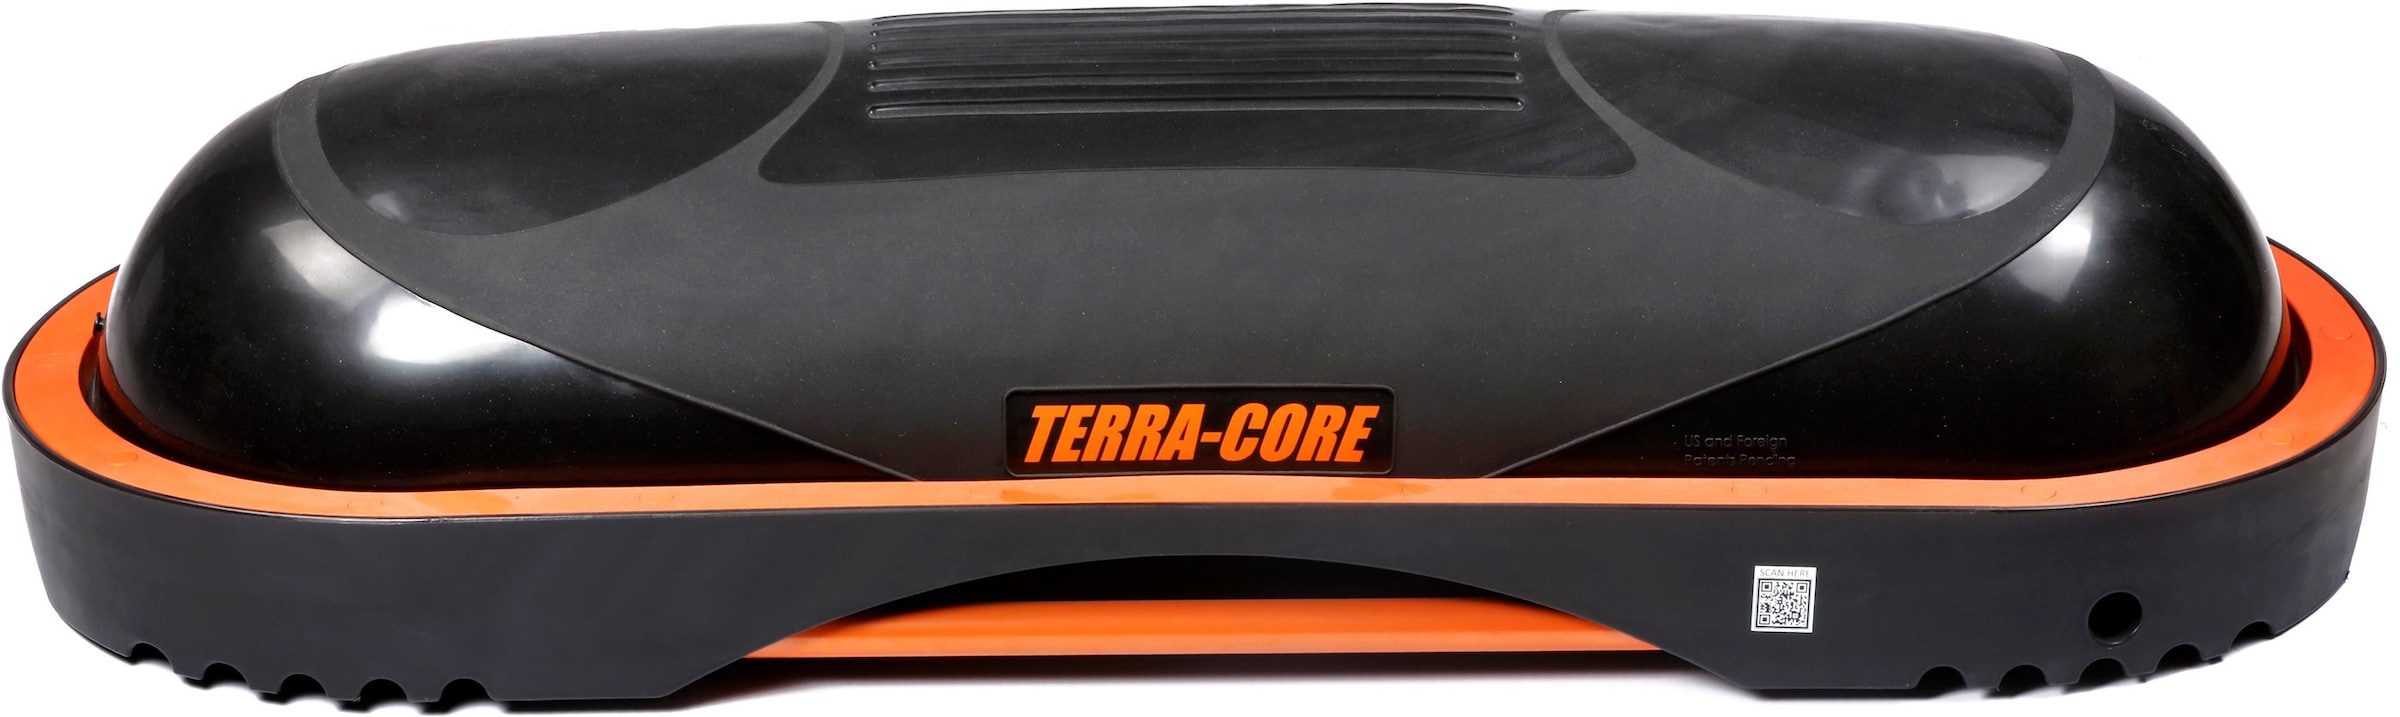 Raten BAUR Stepp (mit Terra Balancetrainer Balance | Core«, Bench, Board Luftpumpe), auf »Terra Universelle und Core Workout